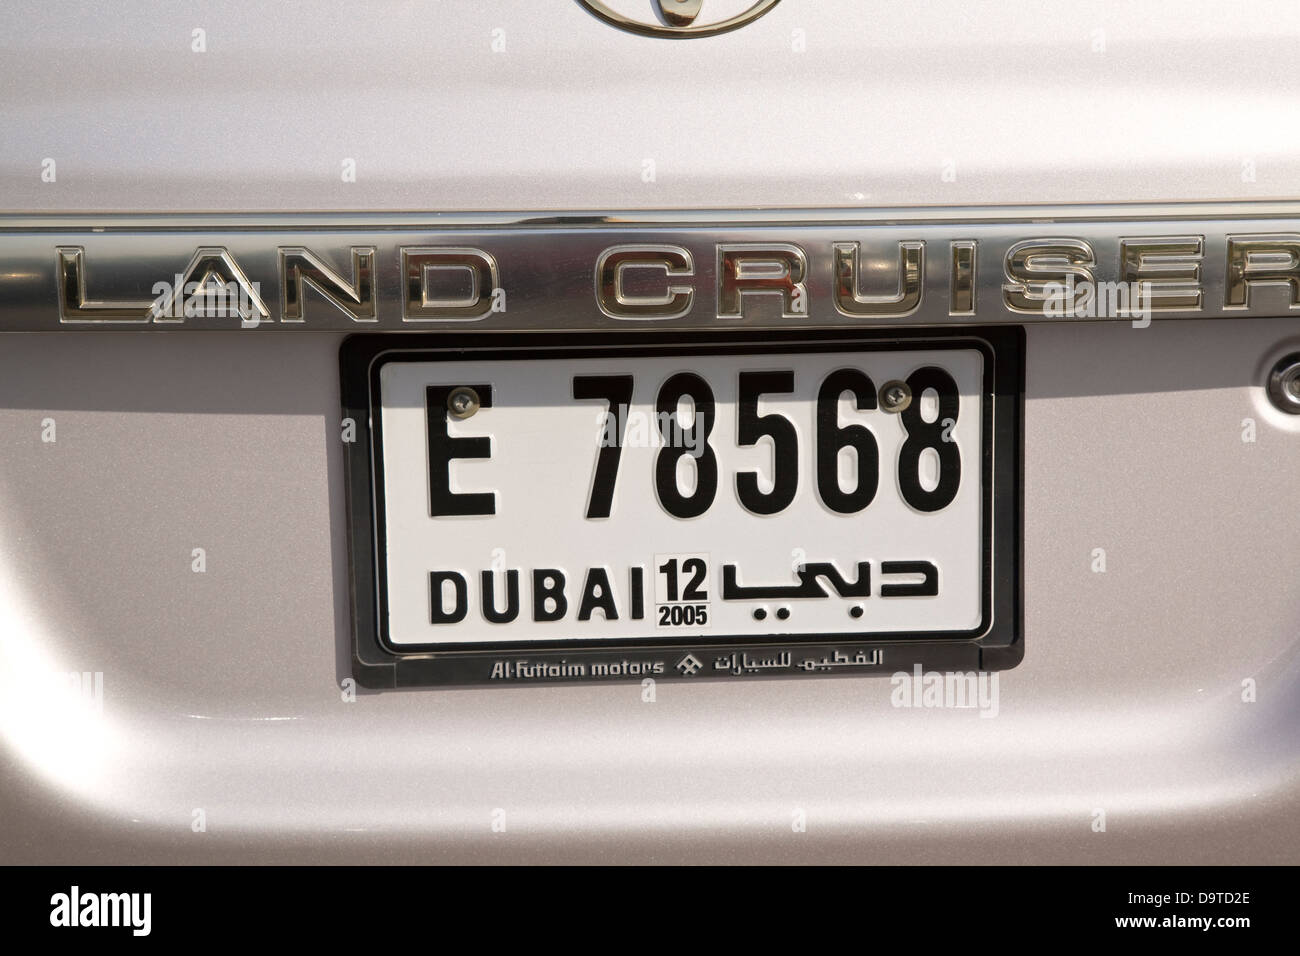 License plate, Dubai, U.A.E. Stock Photo